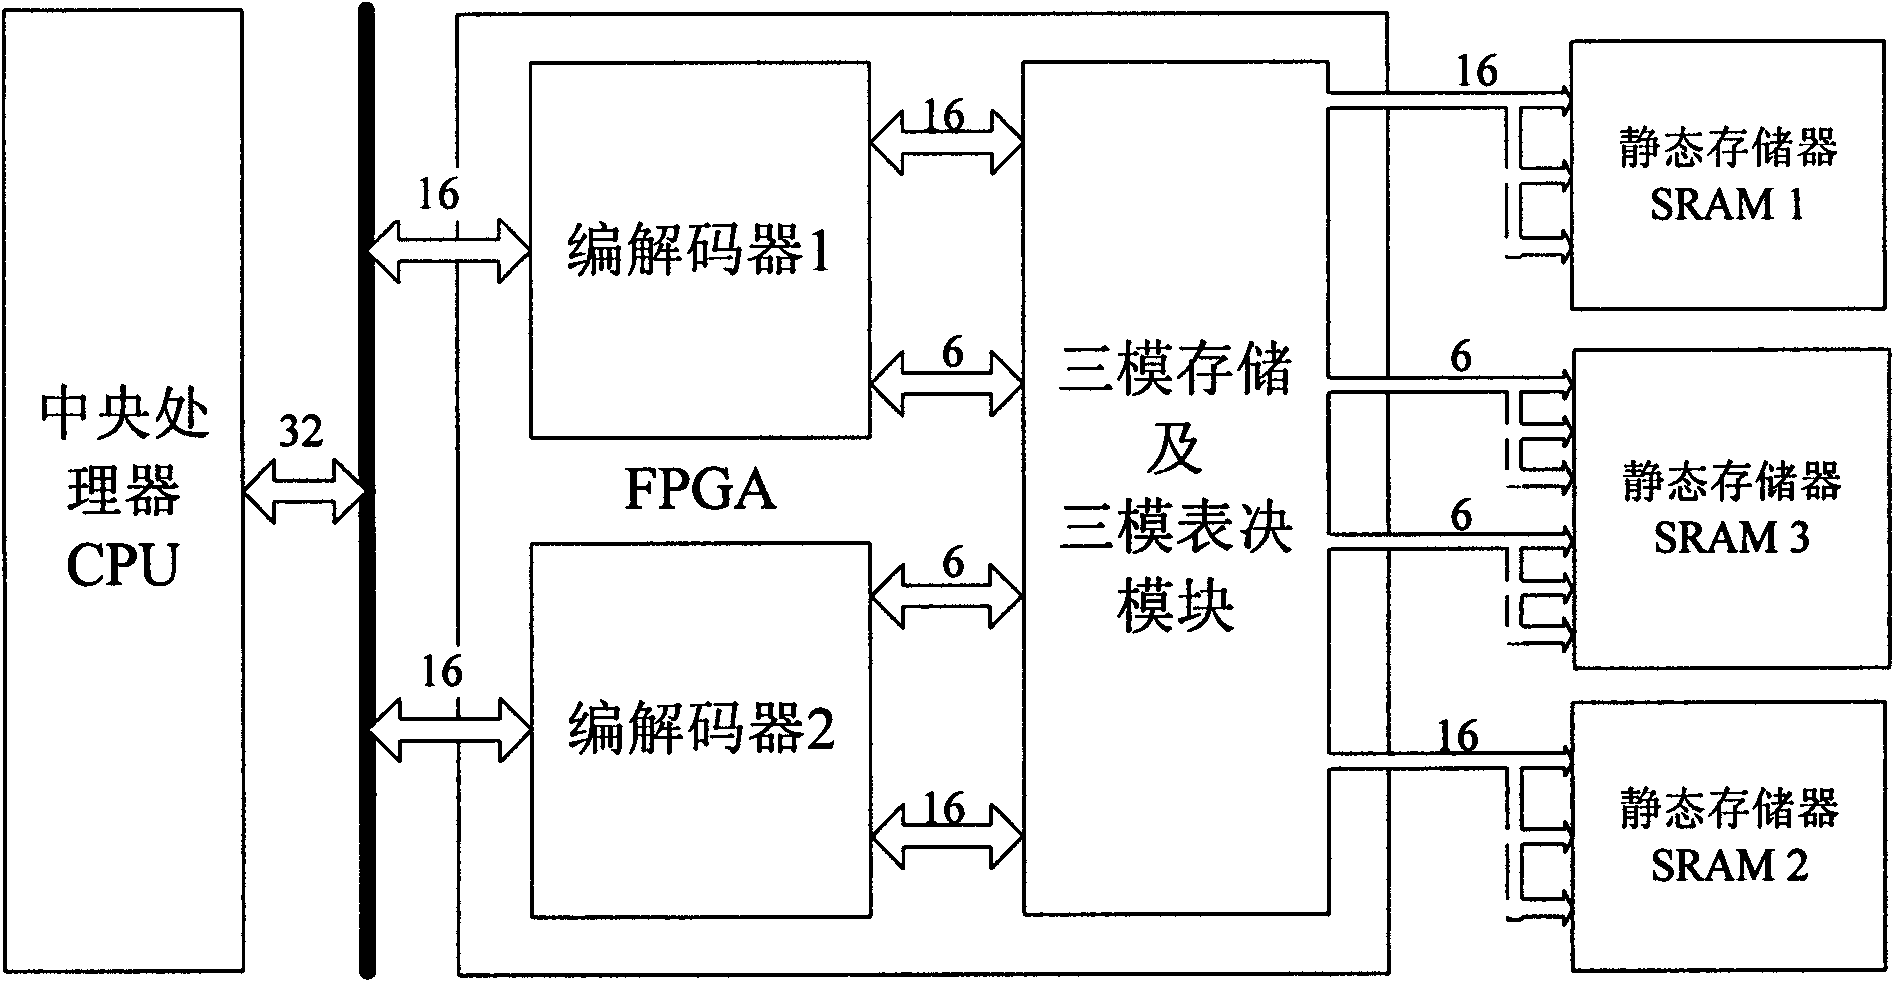 Fault-tolerant method of storage module of picosatellite based on FPGA